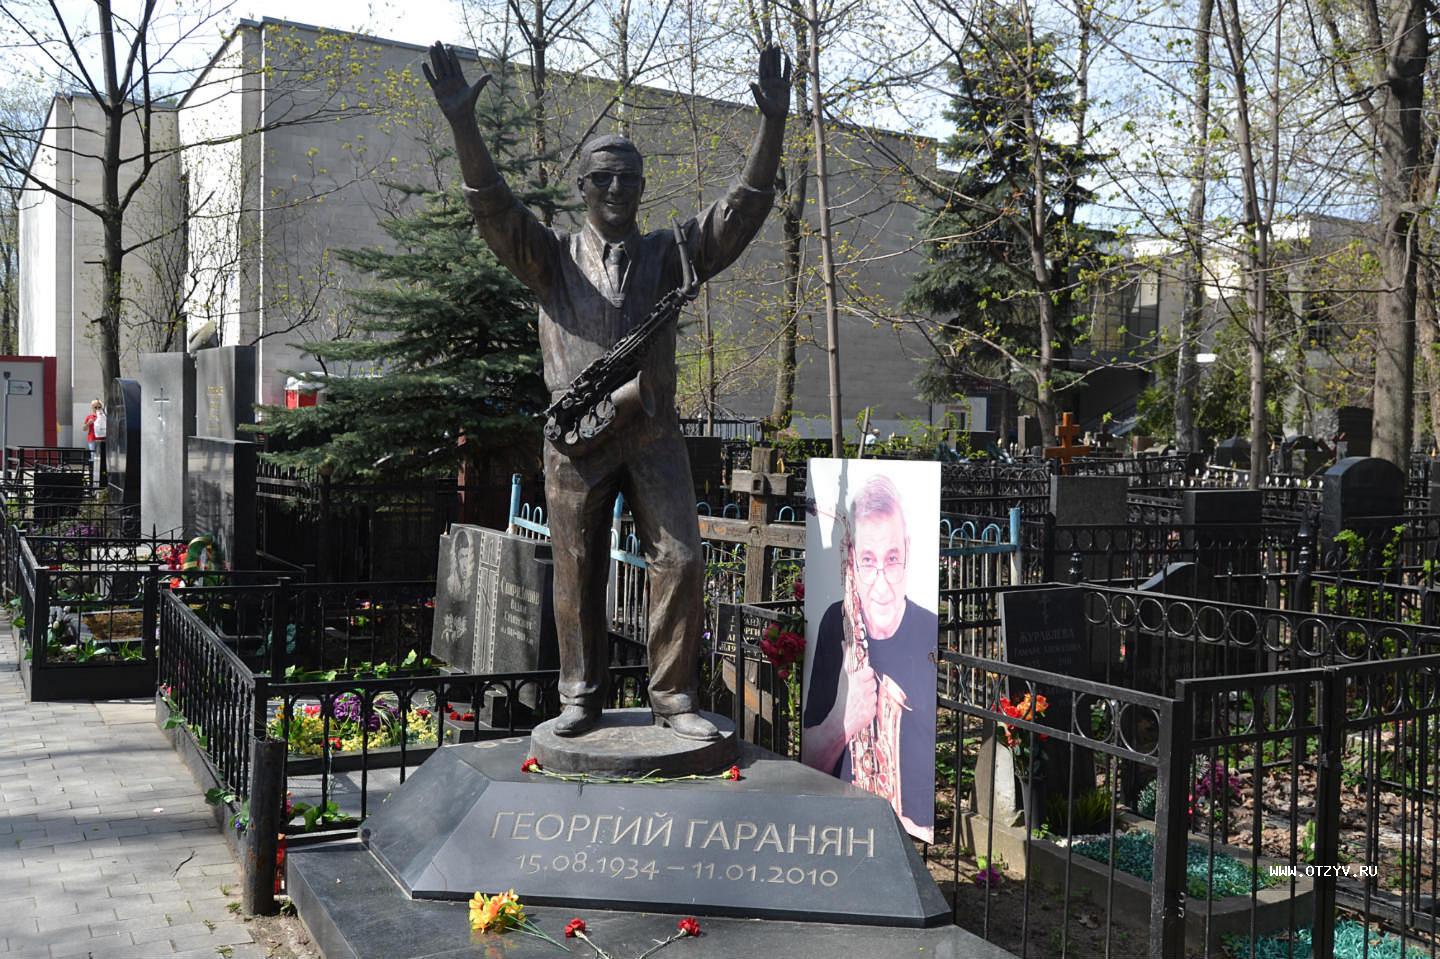 Кто из знаменитостей похоронен на ваганьковском кладбище в москве фото